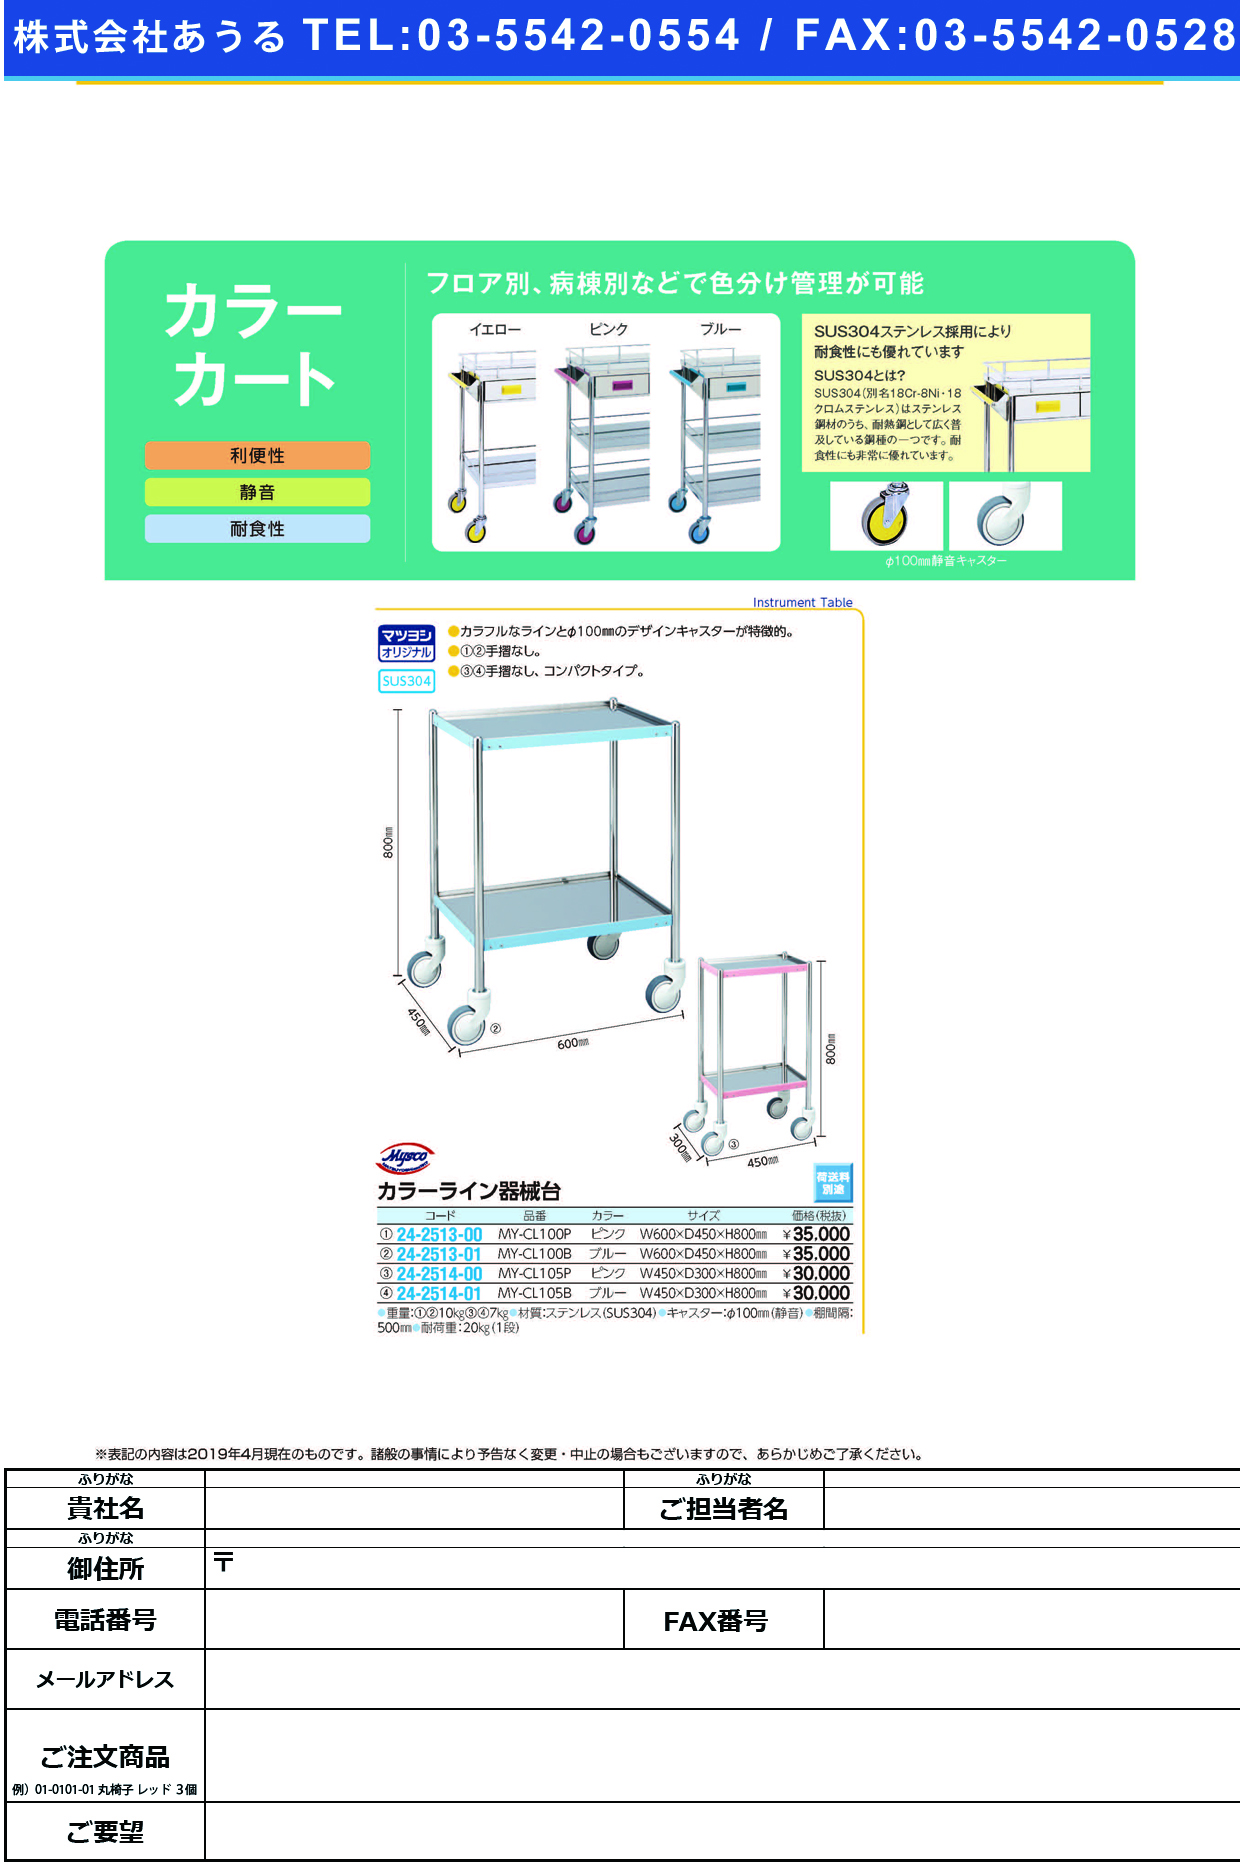 (24-2513-00)カラーライン器械台 MY-CL100P(ﾋﾟﾝｸ) ｶﾗｰﾗｲﾝｷｶｲﾀﾞｲ【1台単位】【2019年カタログ商品】